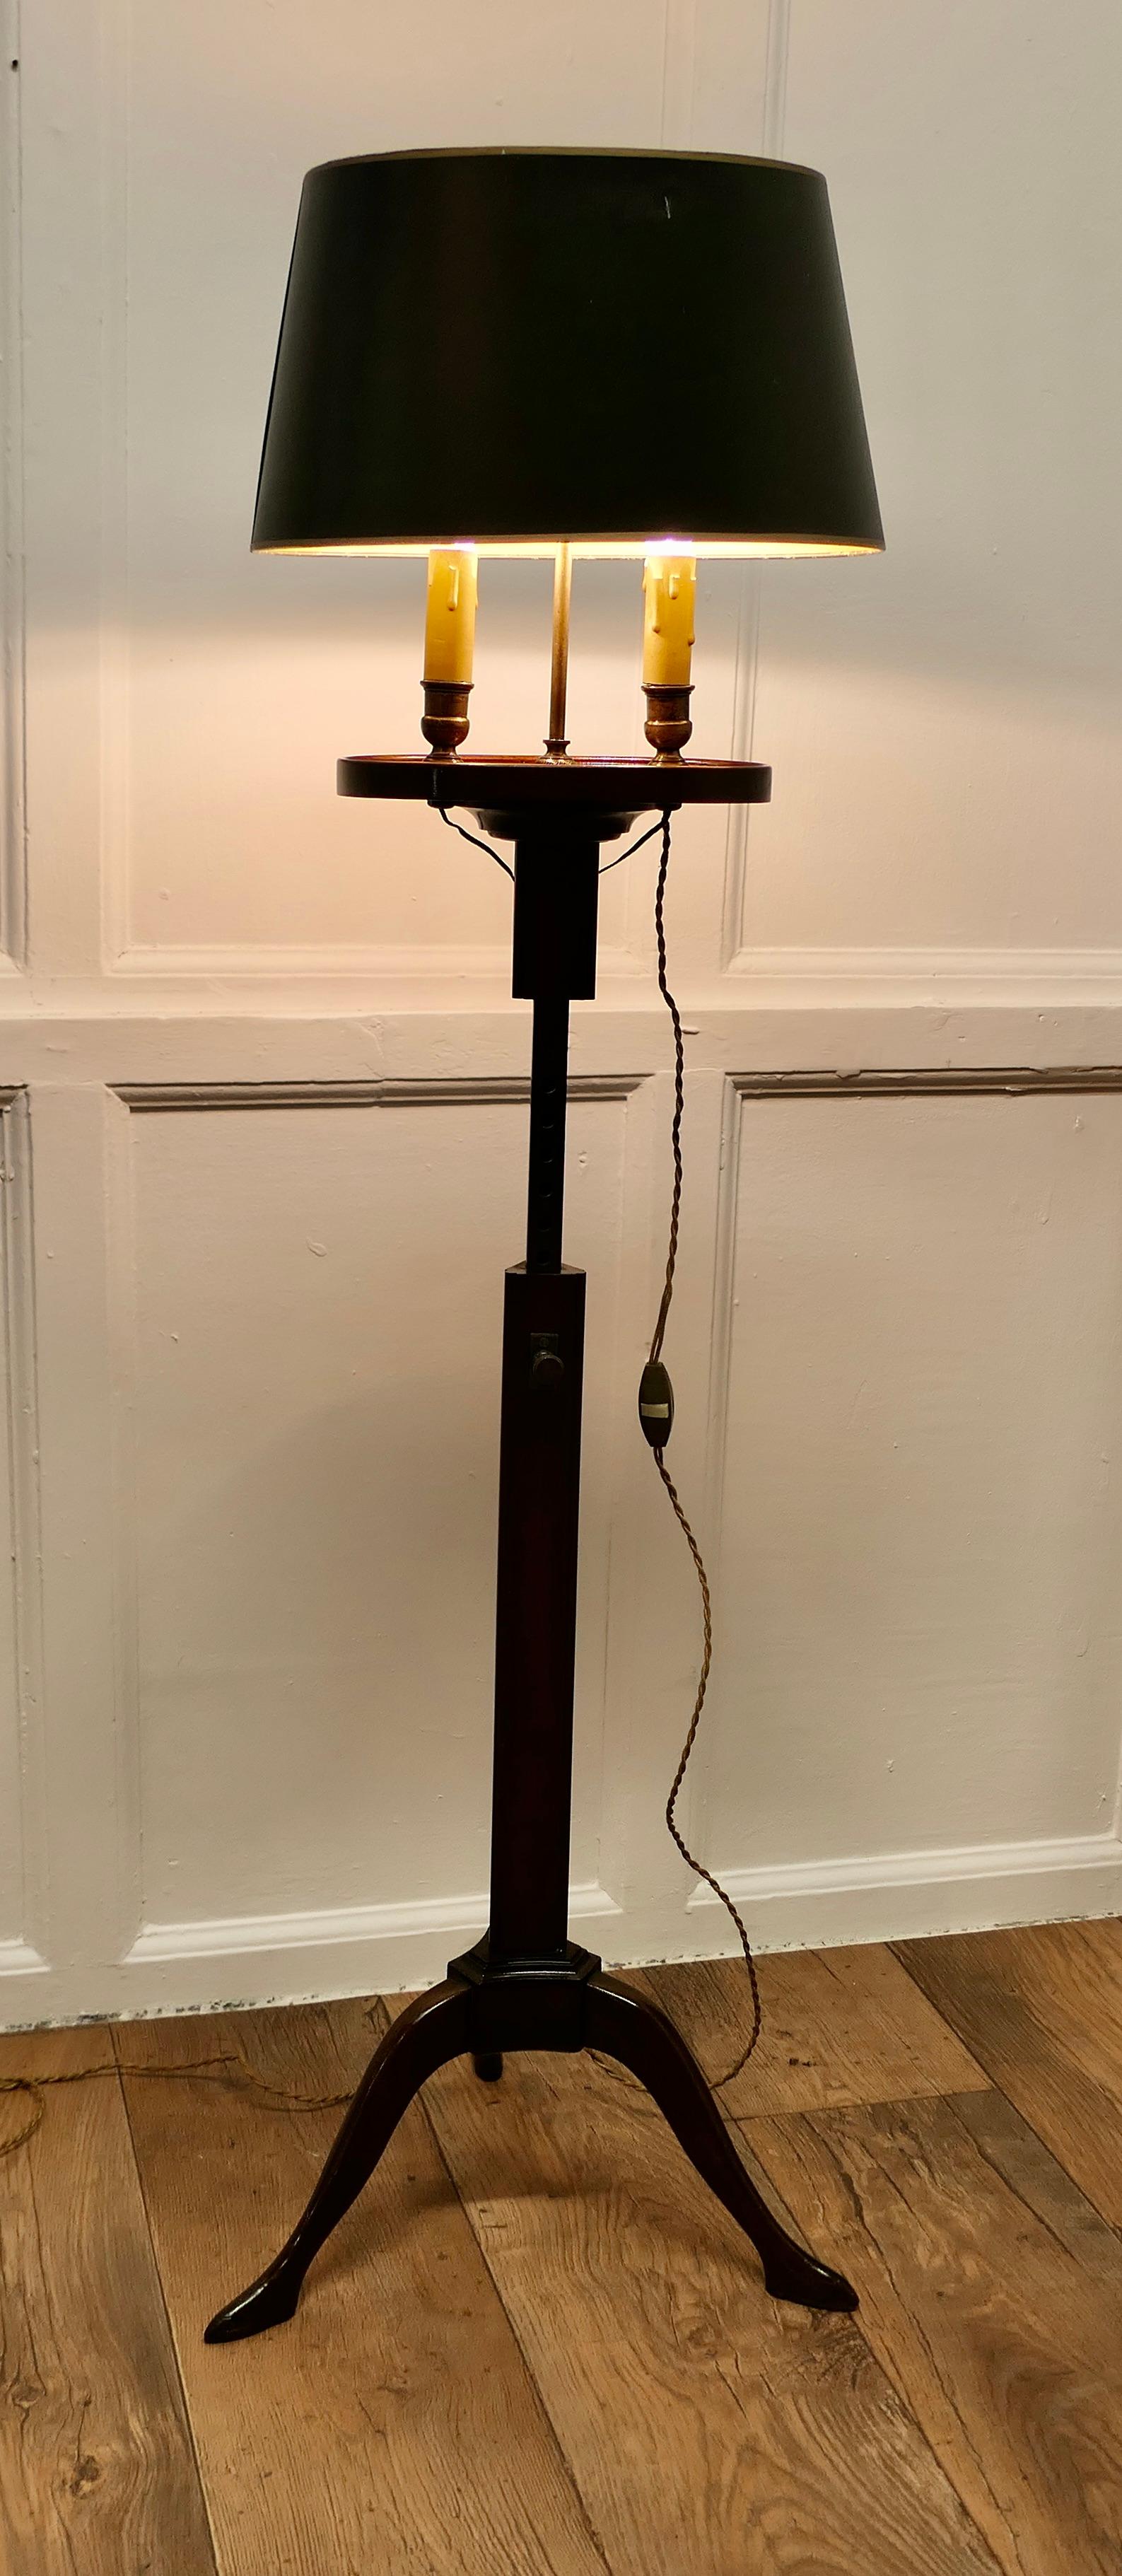 Lampadaire Bouillotte, lampe à deux bougies réglable

Il s'agit d'une pièce Elegant, à l'origine la lampe aurait été alimentée par une bougie, celle-ci a été convertie à l'électricité. 
La lampe repose sur une base à trois pieds, avec une belle